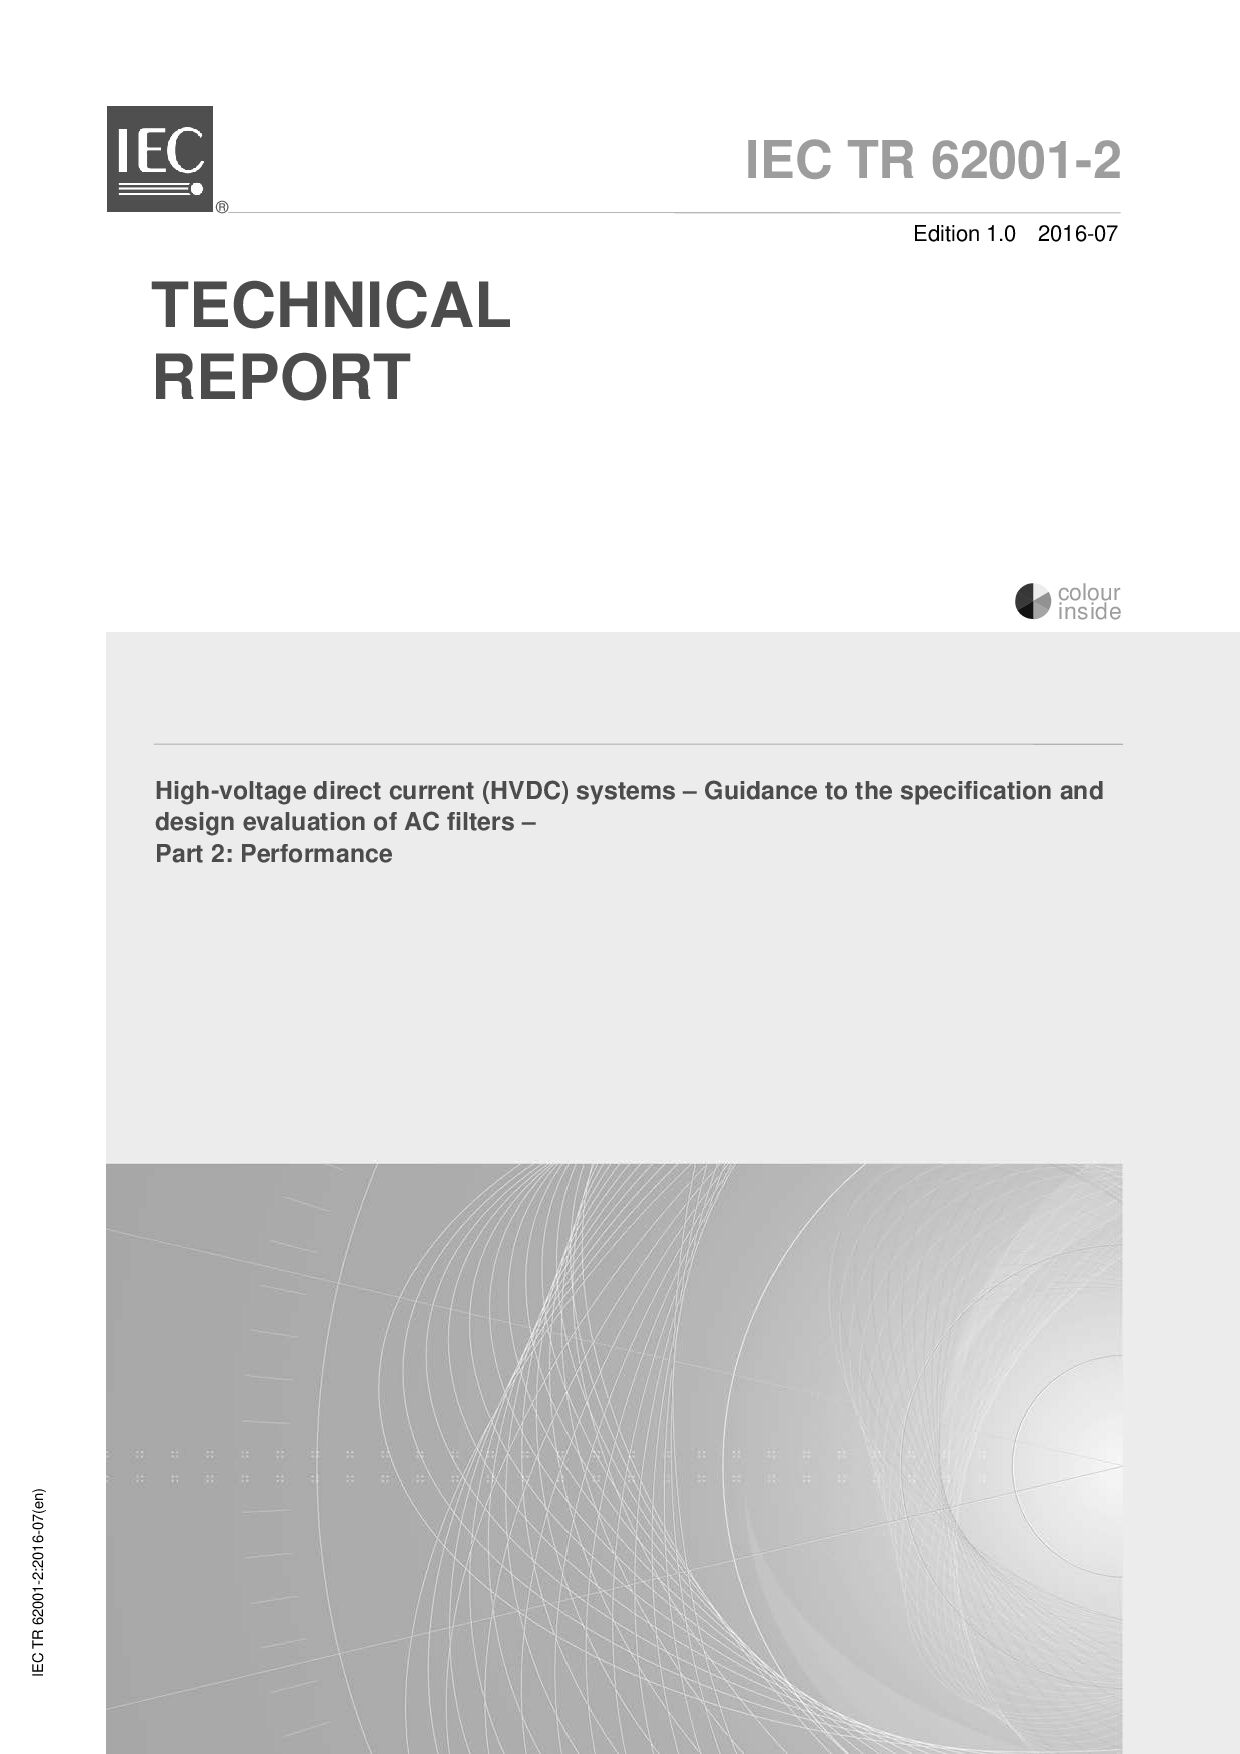 IEC TR 62001-2:2016